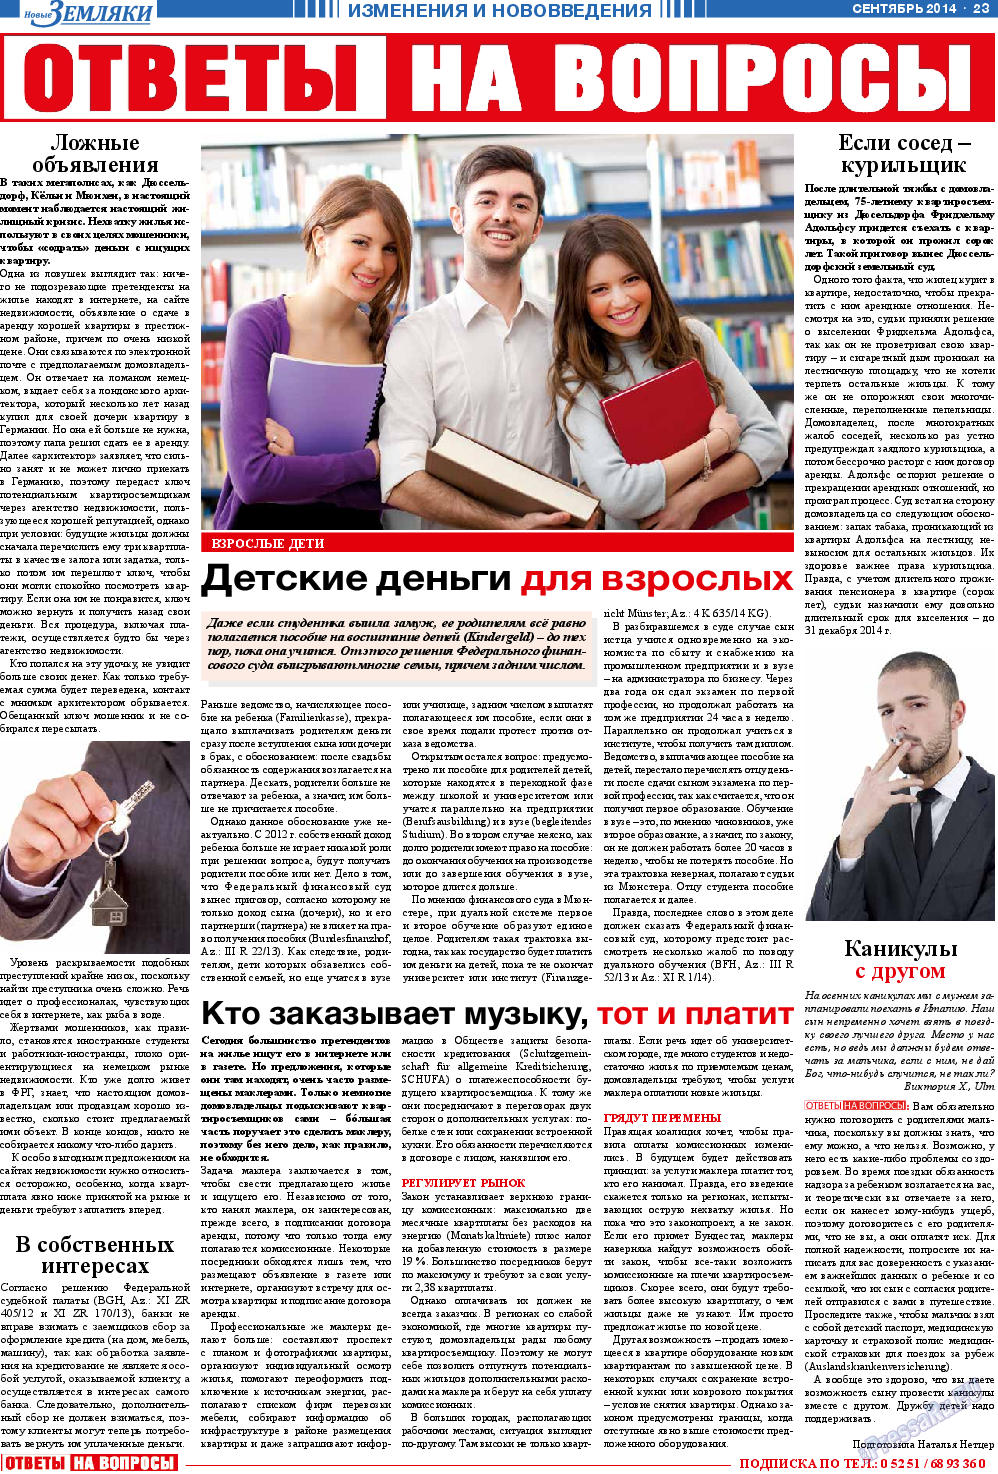 Новые Земляки, газета. 2014 №9 стр.23